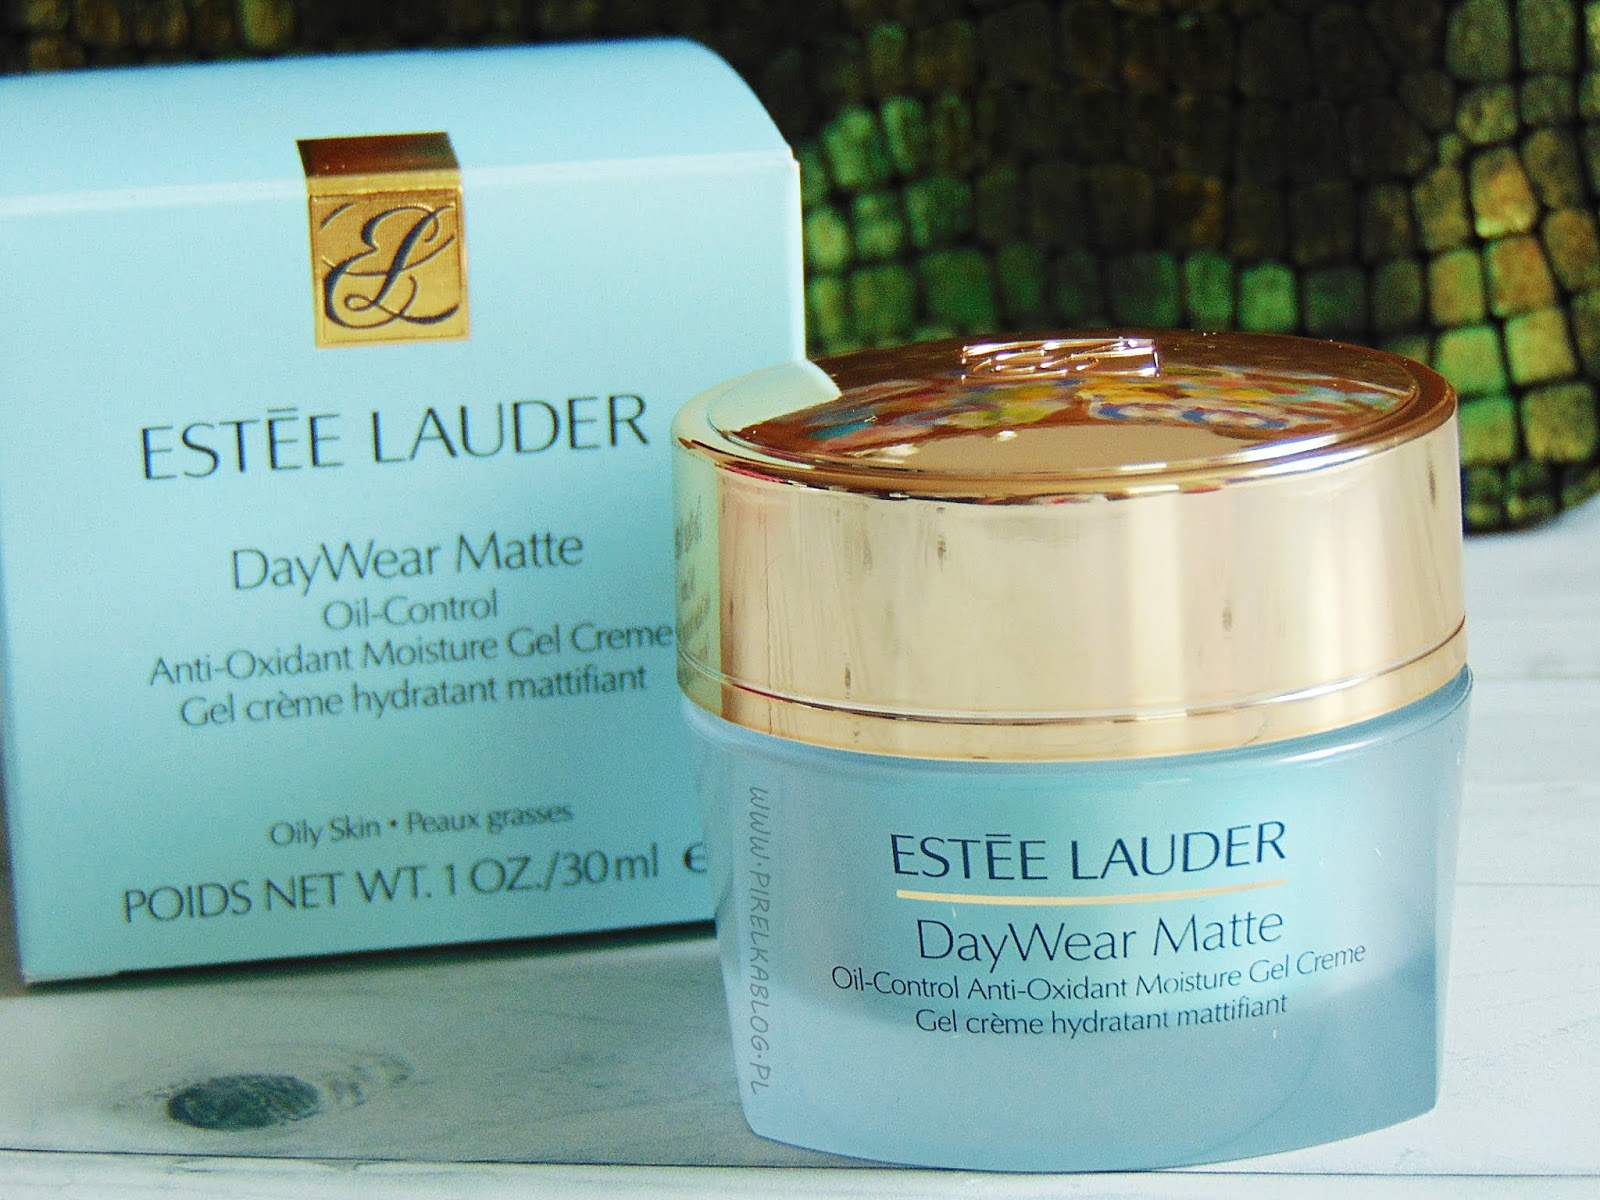 Estee Lauder DayWear Matte cream - krem do cery tłustej kontrolujący wydzielanie sebum